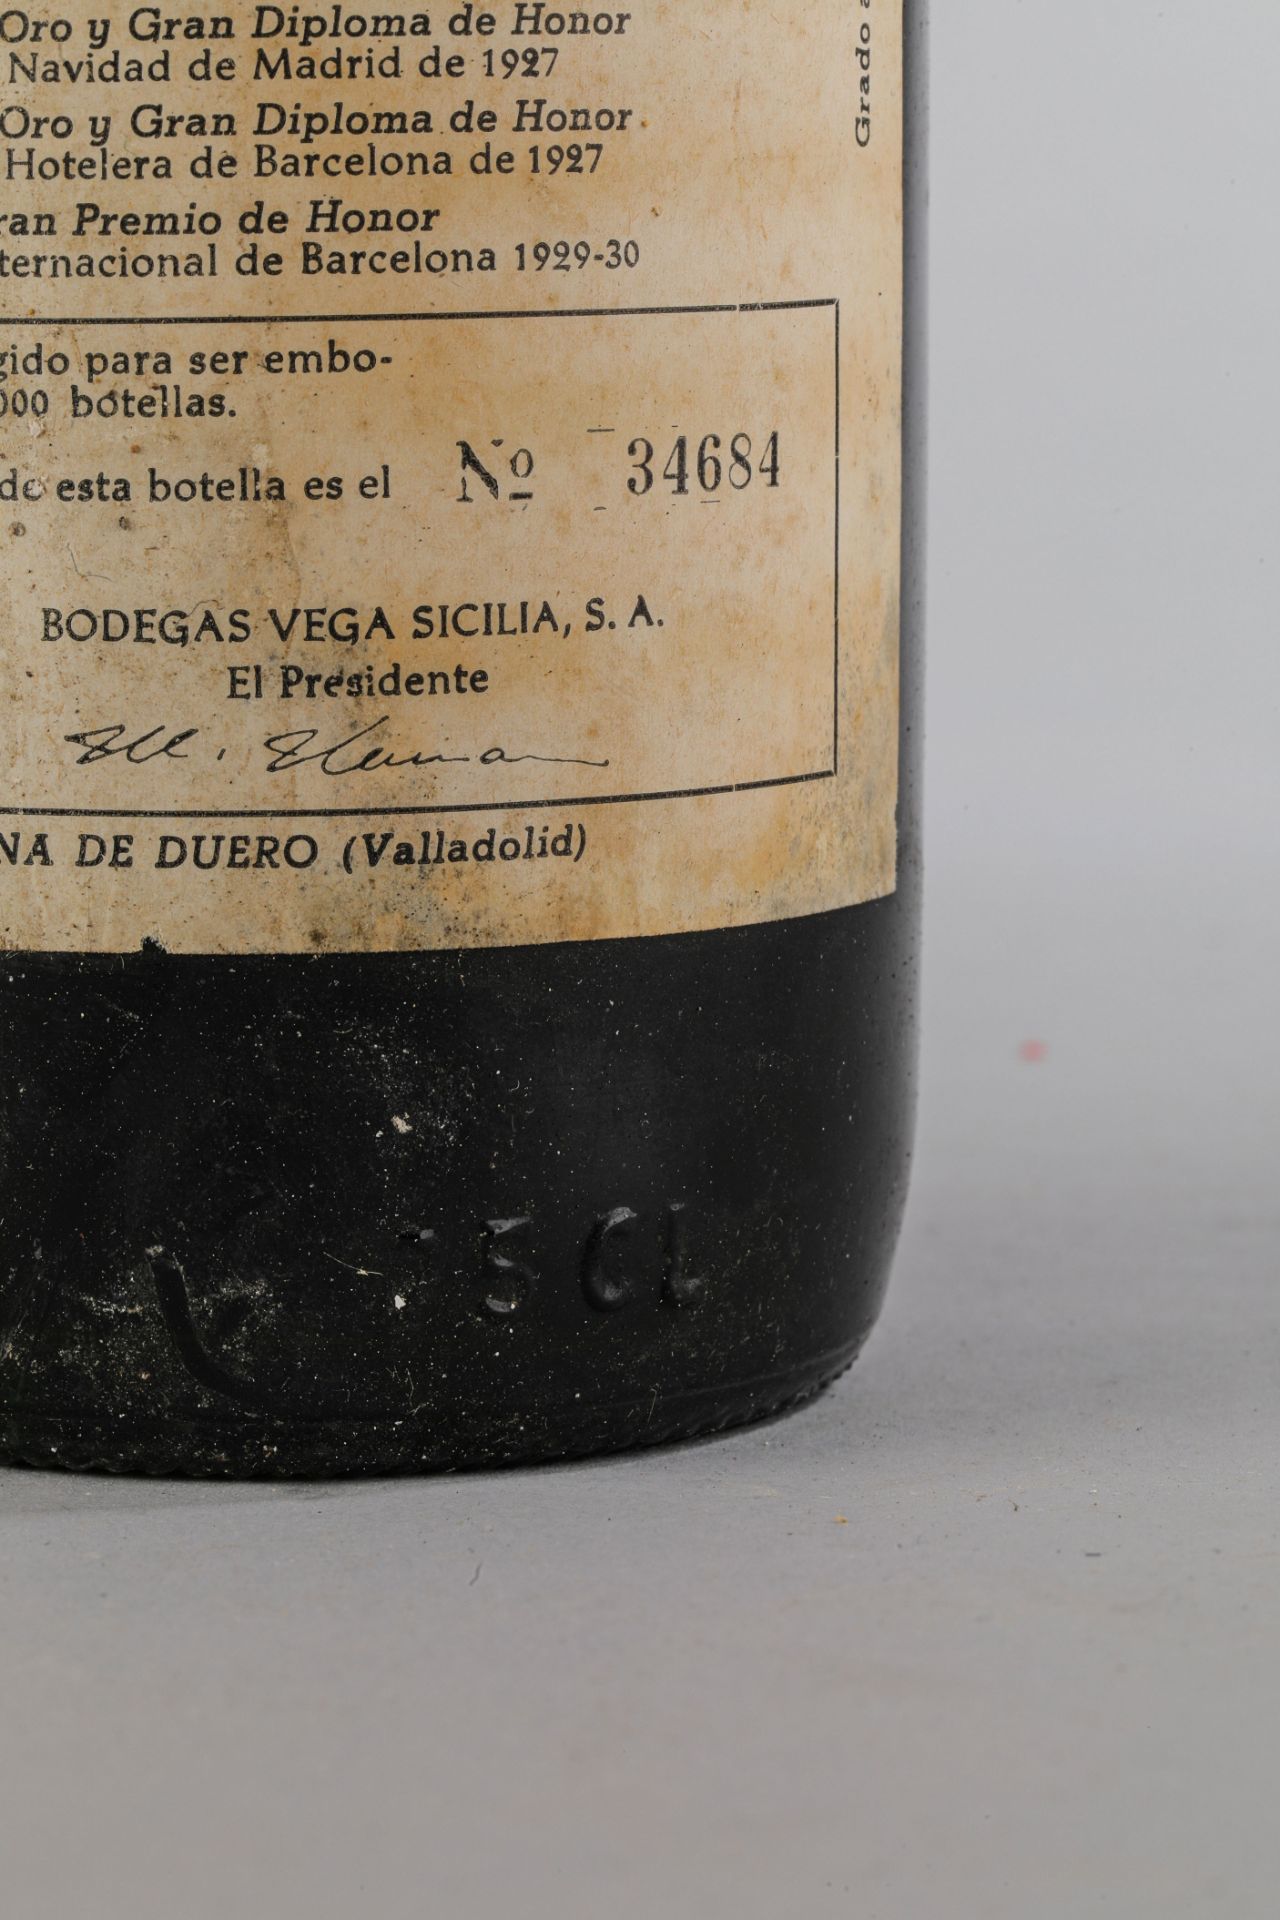 VEGA SICILIA UNICO. 1966. Ribera del Duero. Bouteille N°34684 sur production de 96 000 bouteilles. - Image 4 of 5